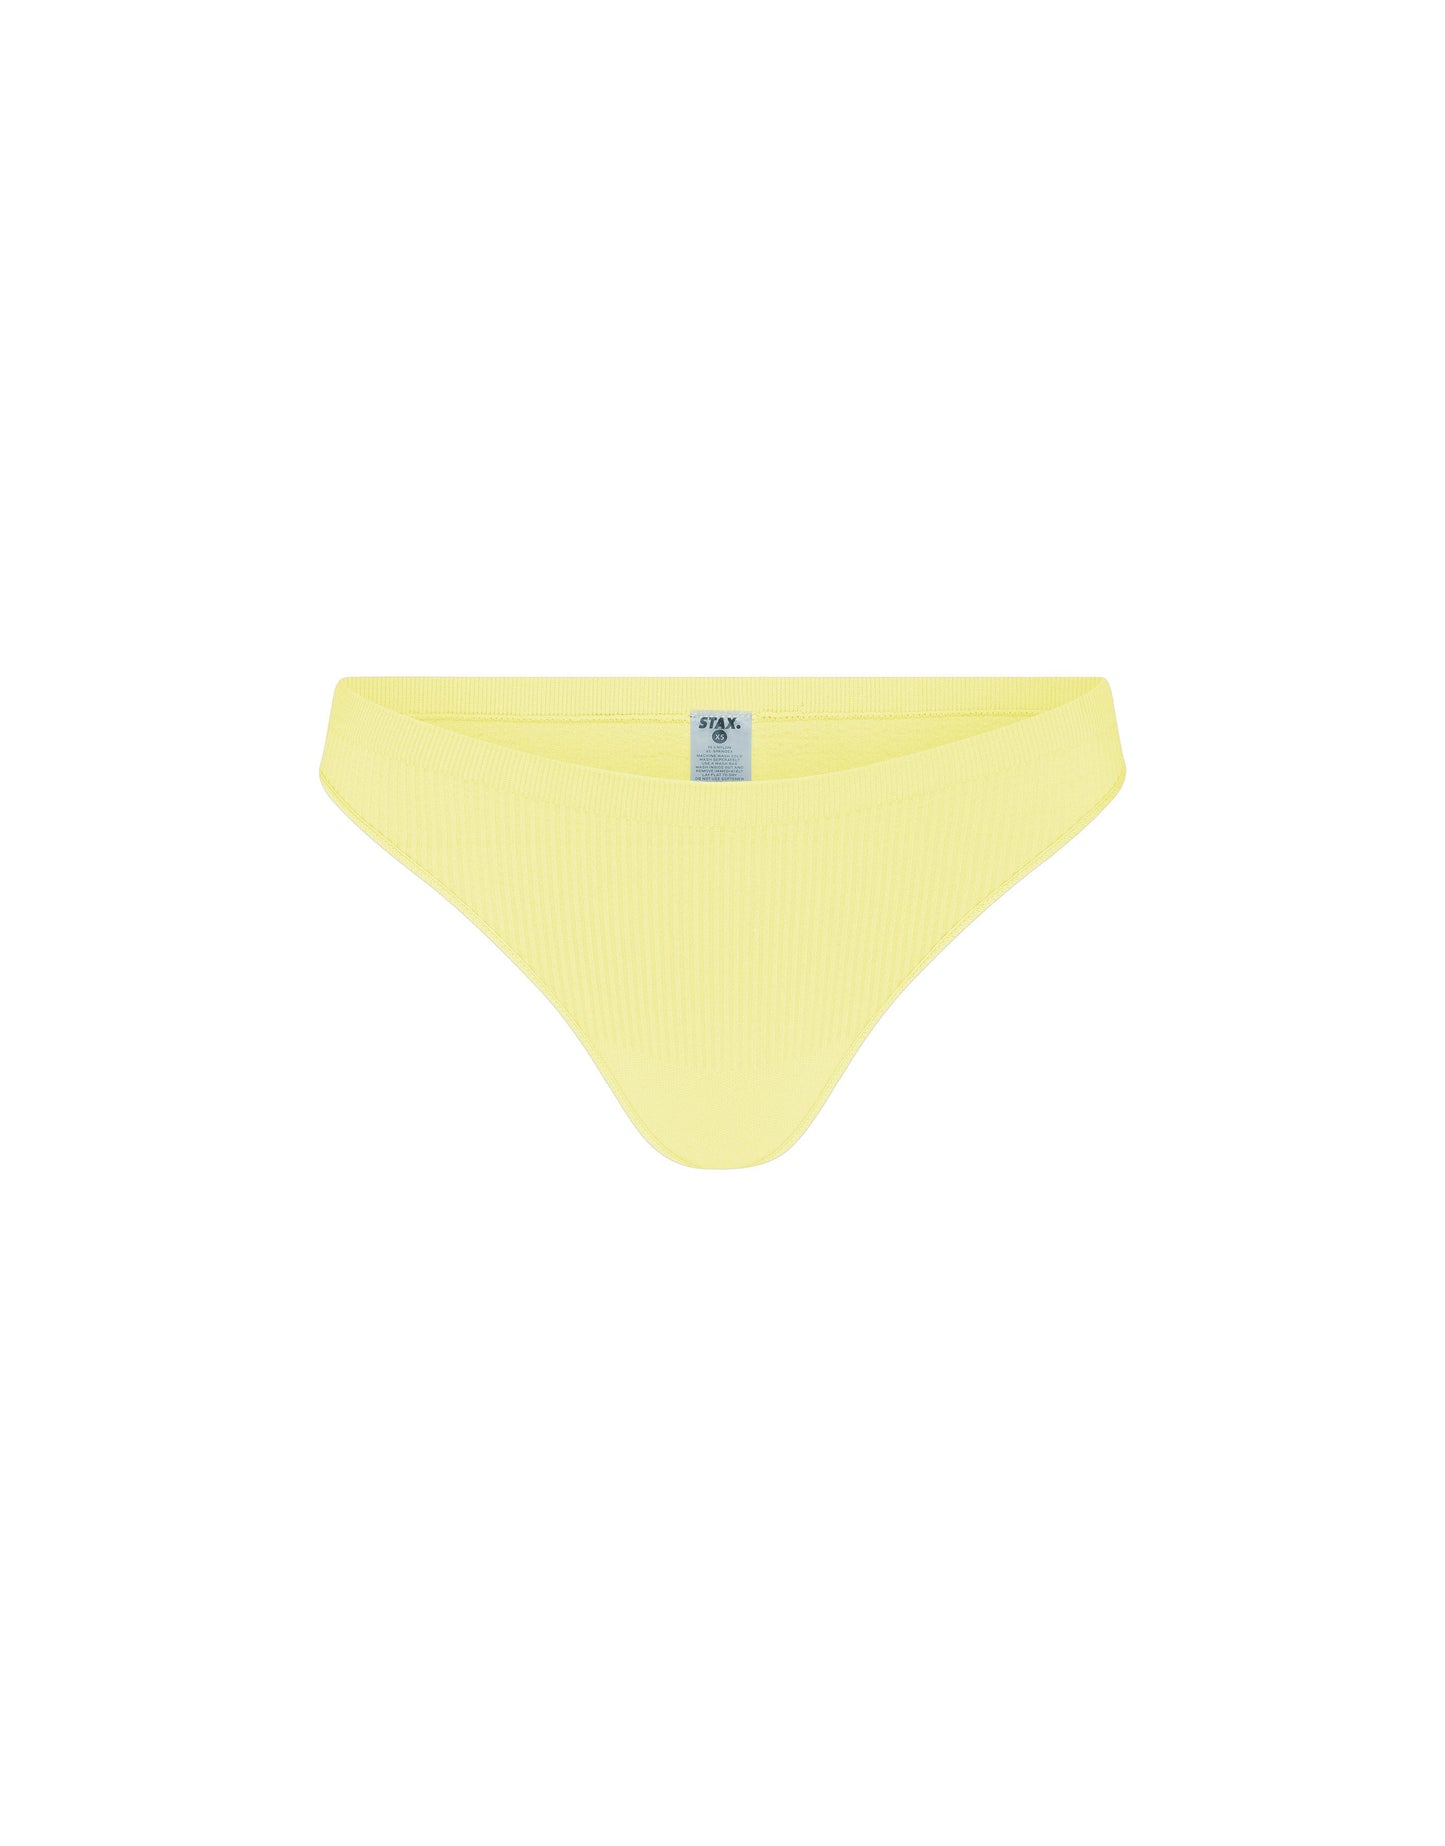 STAX. Premium Seamless V5.1 (Favourites) Sports G-String - Lemon (Yellow)